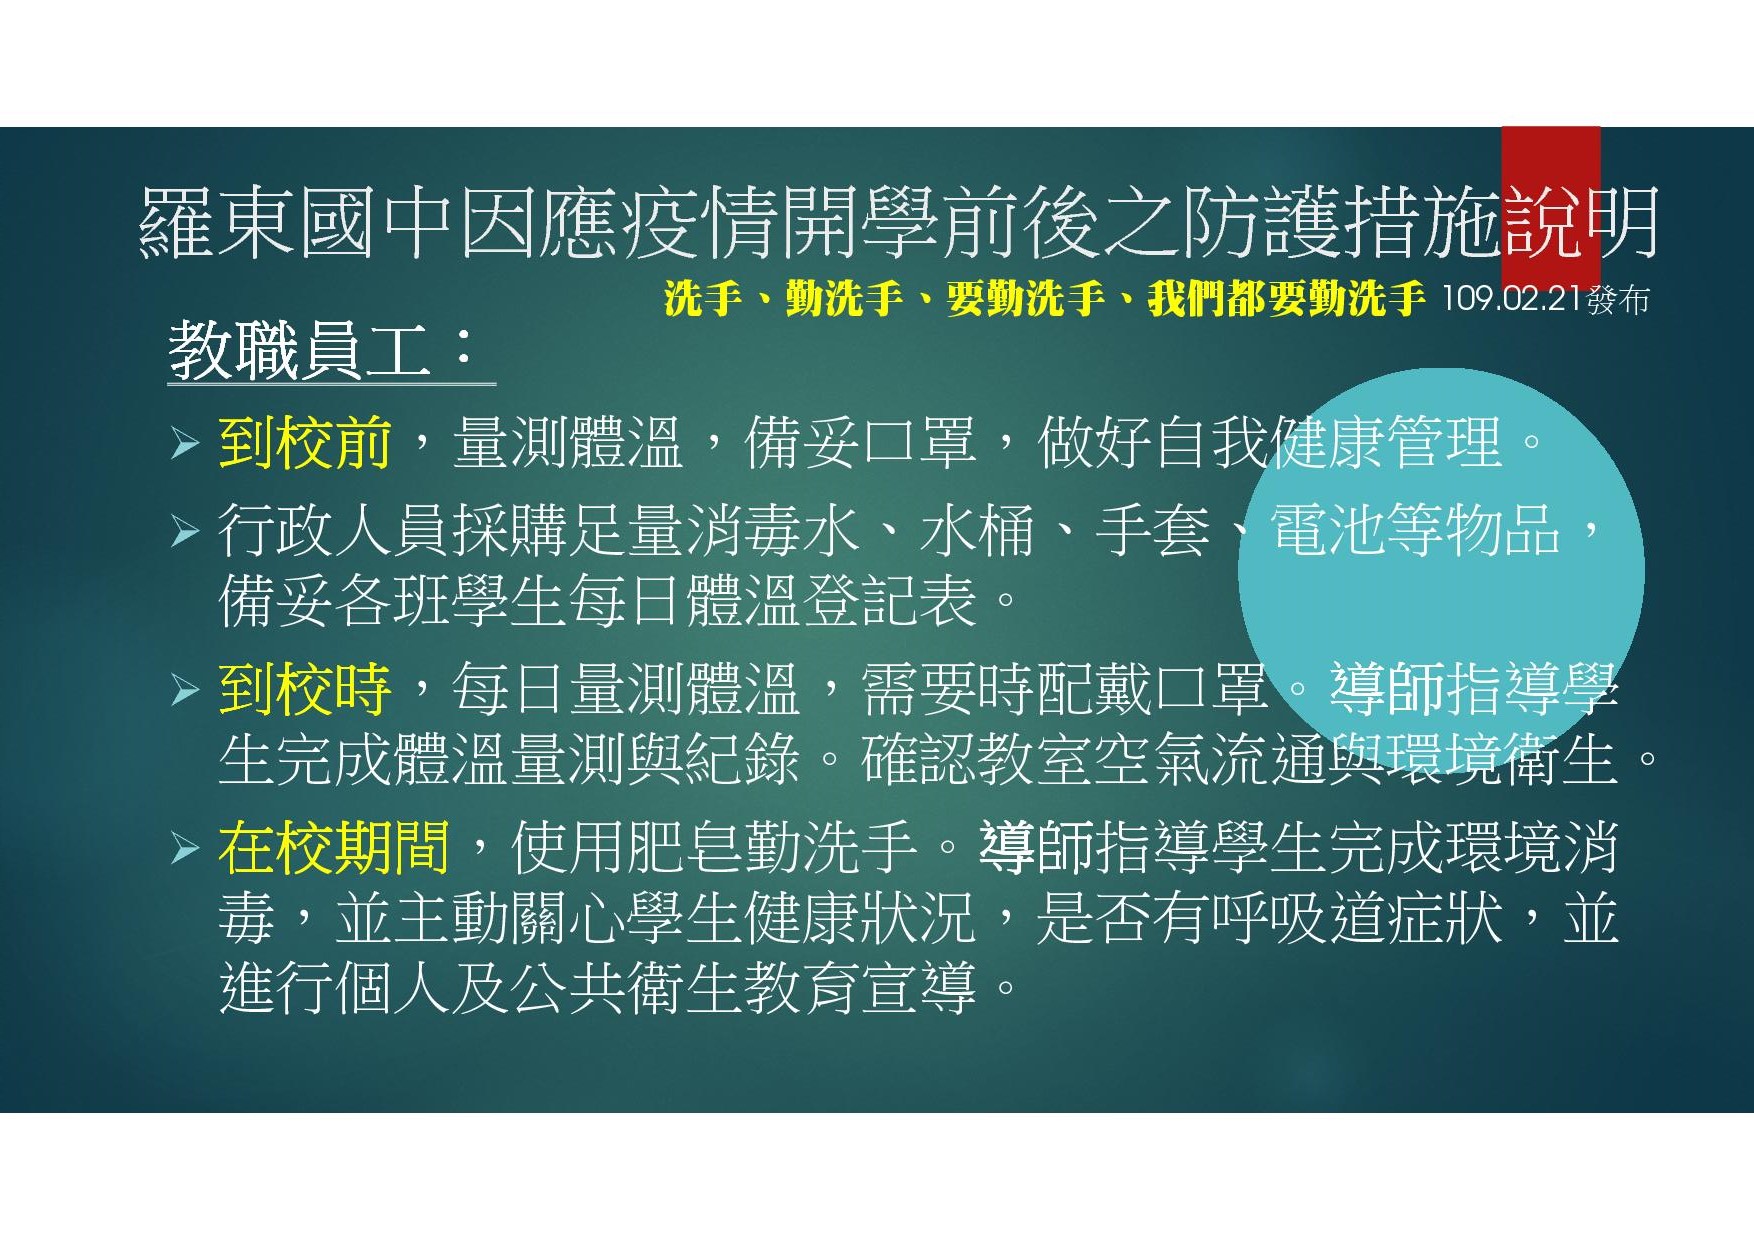 02 羅東國中因應中國大陸新型冠狀病毒肺炎疫情開學前後之防護措施說明1090221-43